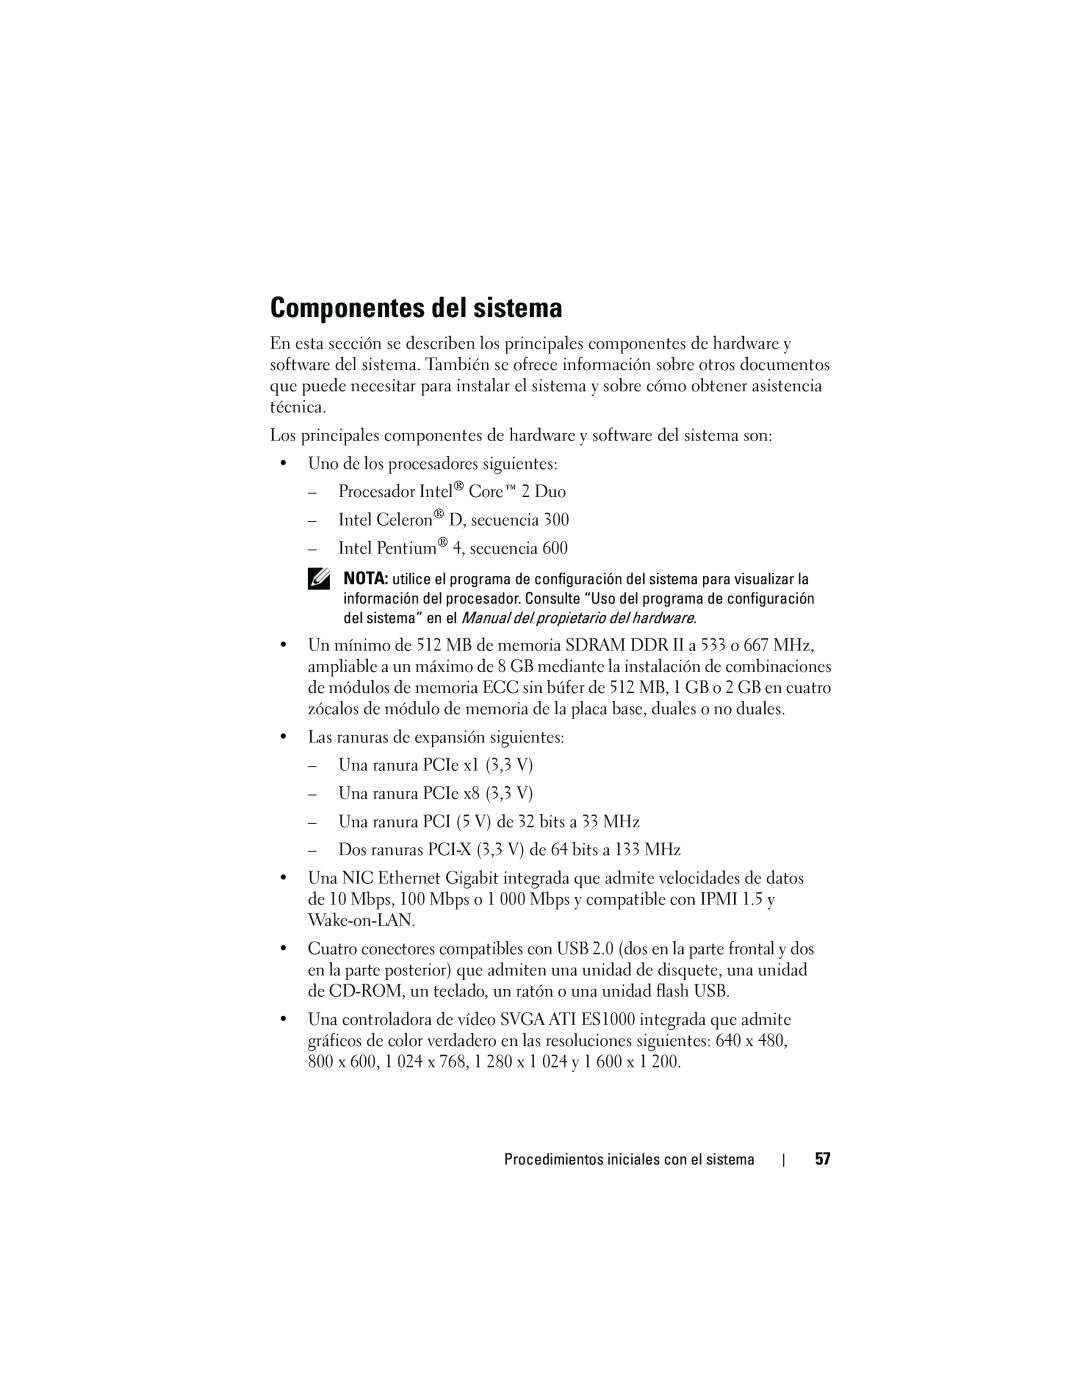 Dell JU892, MVT01 manual Componentes del sistema 